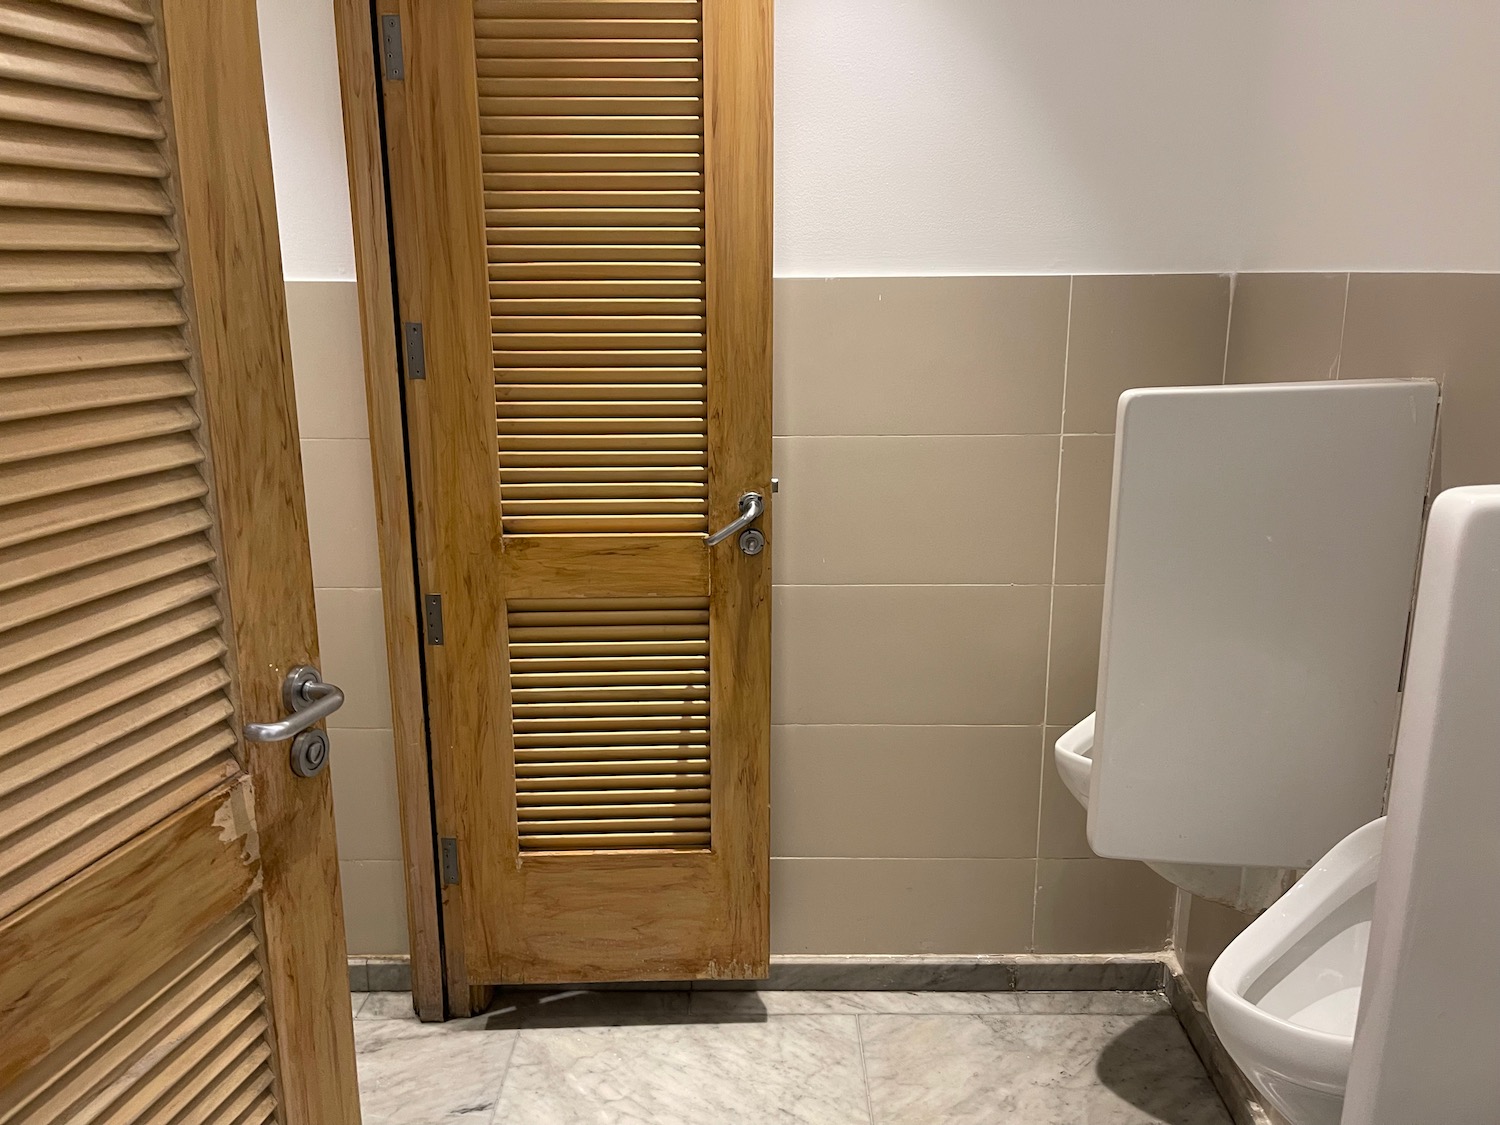 a wooden door next to a urinal